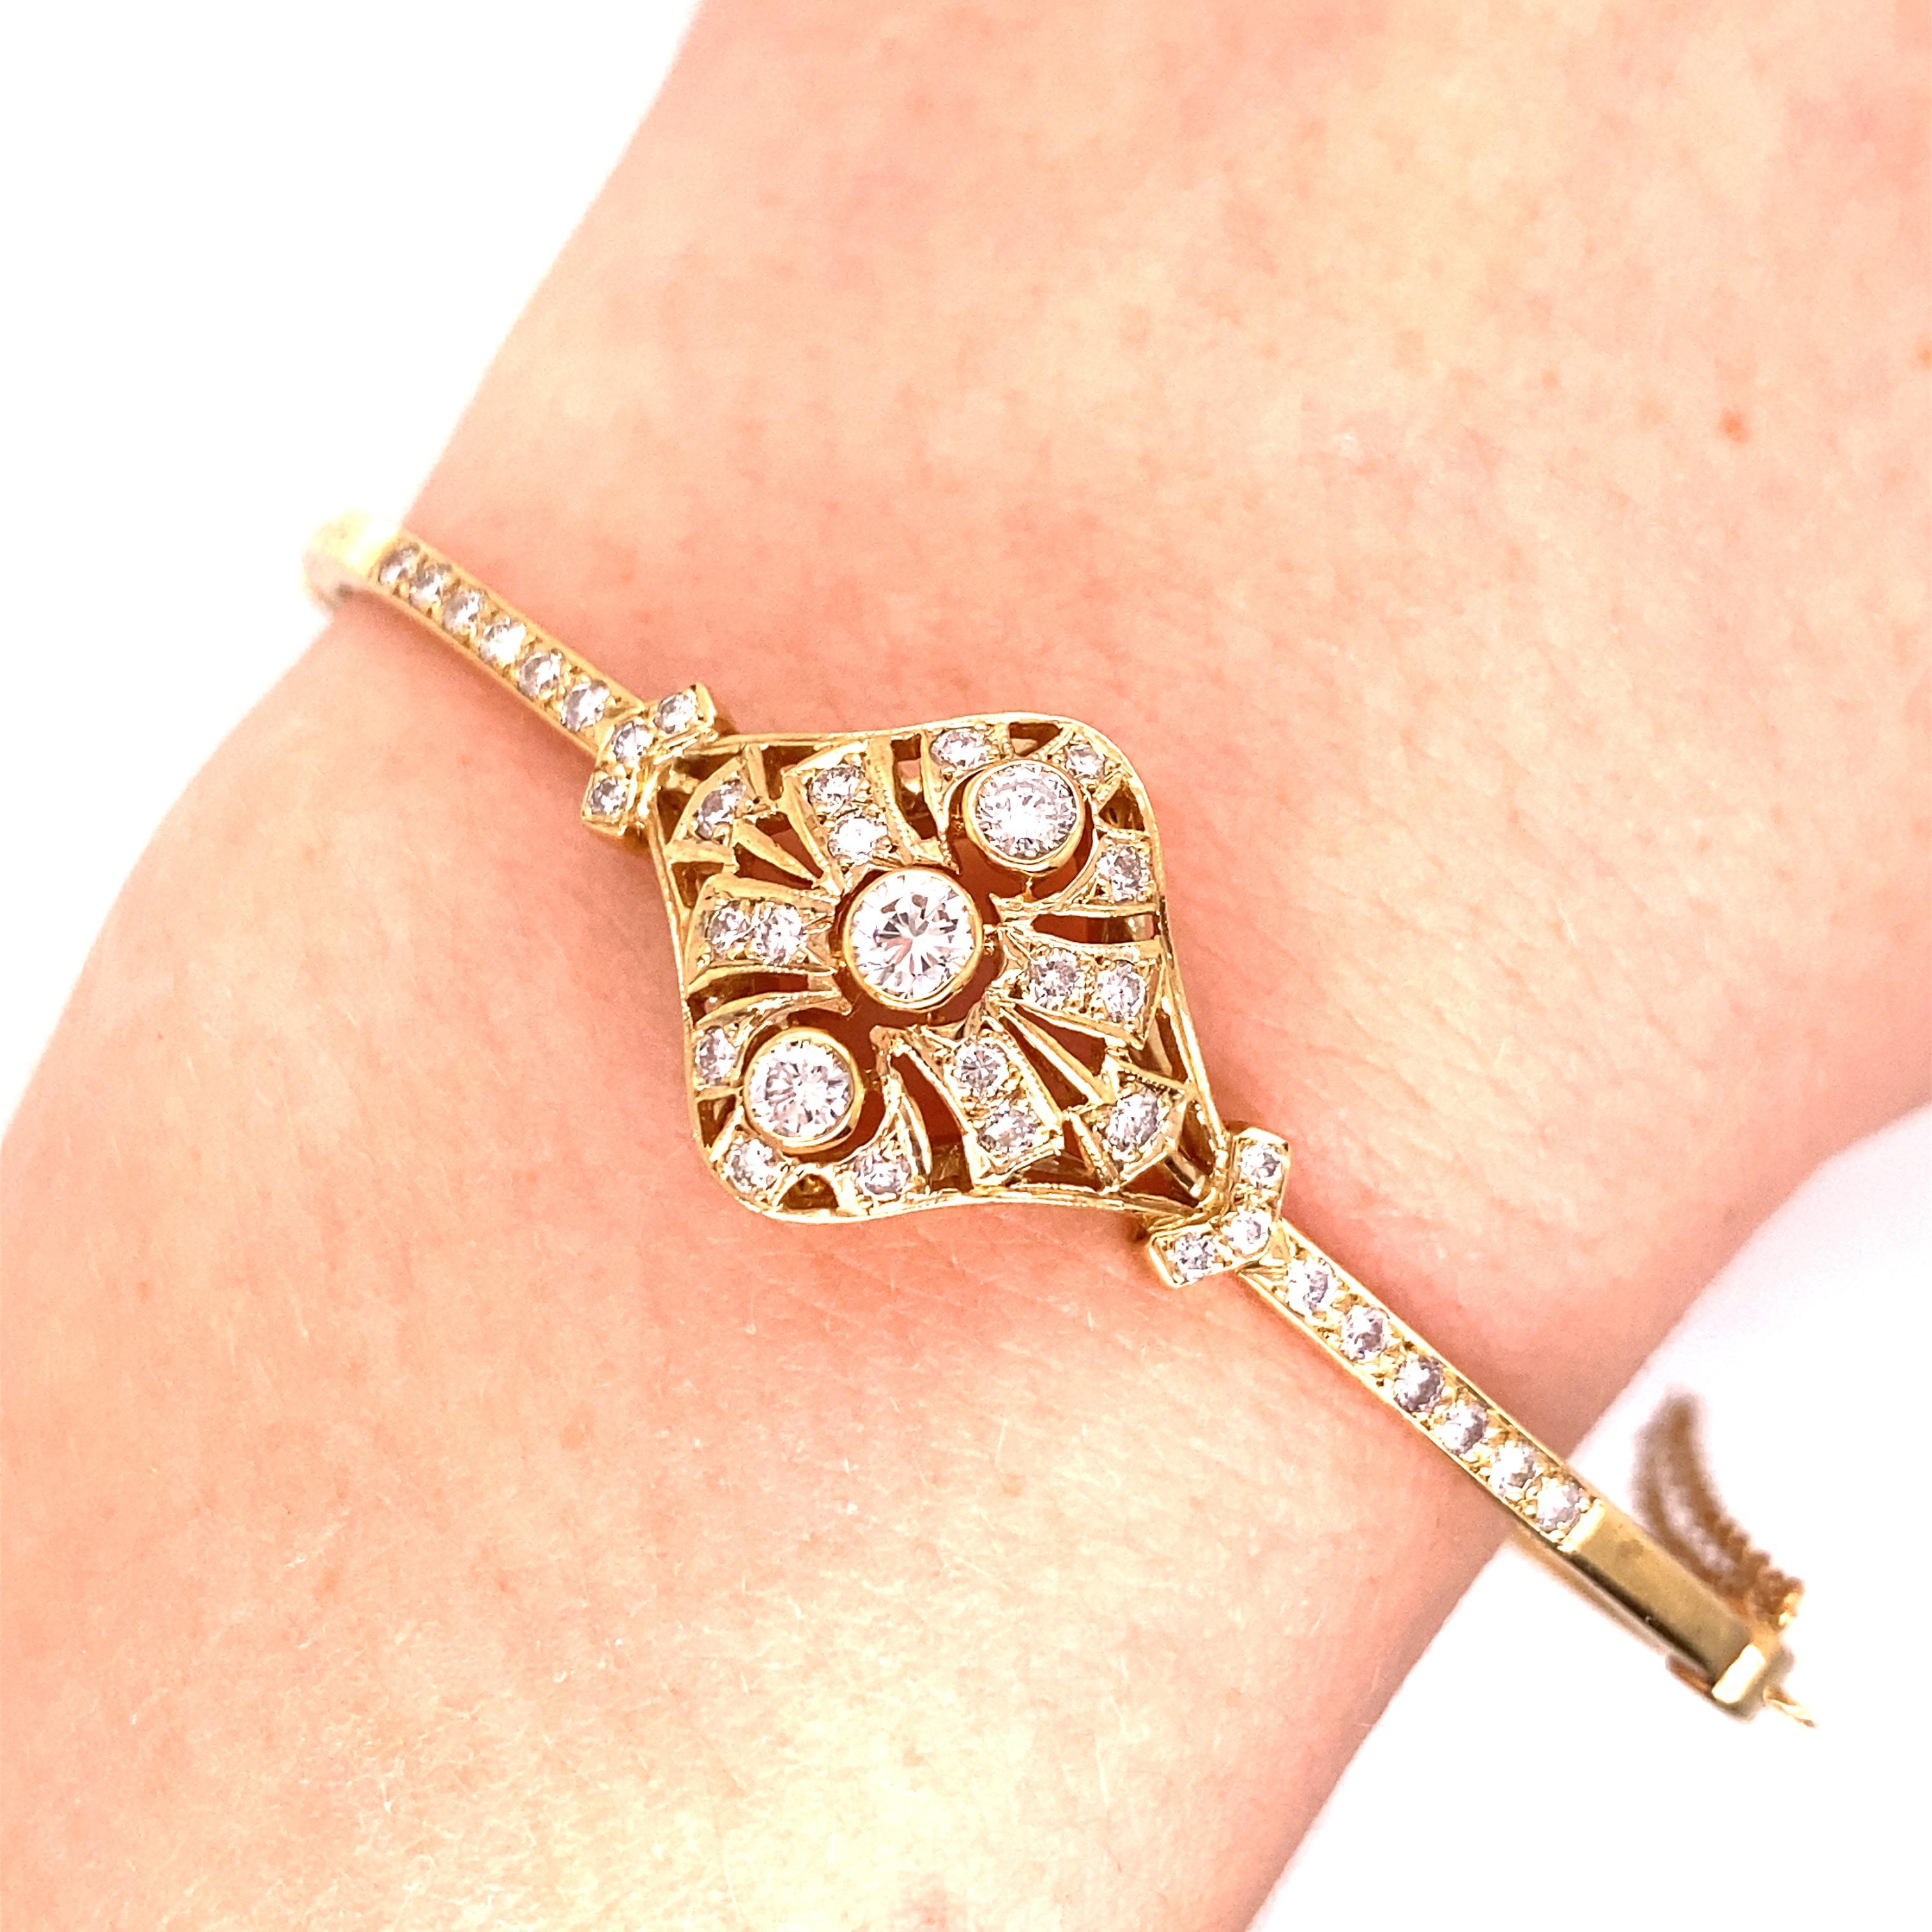 Vintage Victorian Era Reproduction 14K Yellow Gold Diamond Bangle - Le bracelet contient 38 diamants ronds de taille brillant pesant approximativement 1.00ct avec G - H couleur et SI clarté. La largeur du bracelet au centre mesure 16,5 mm, et le